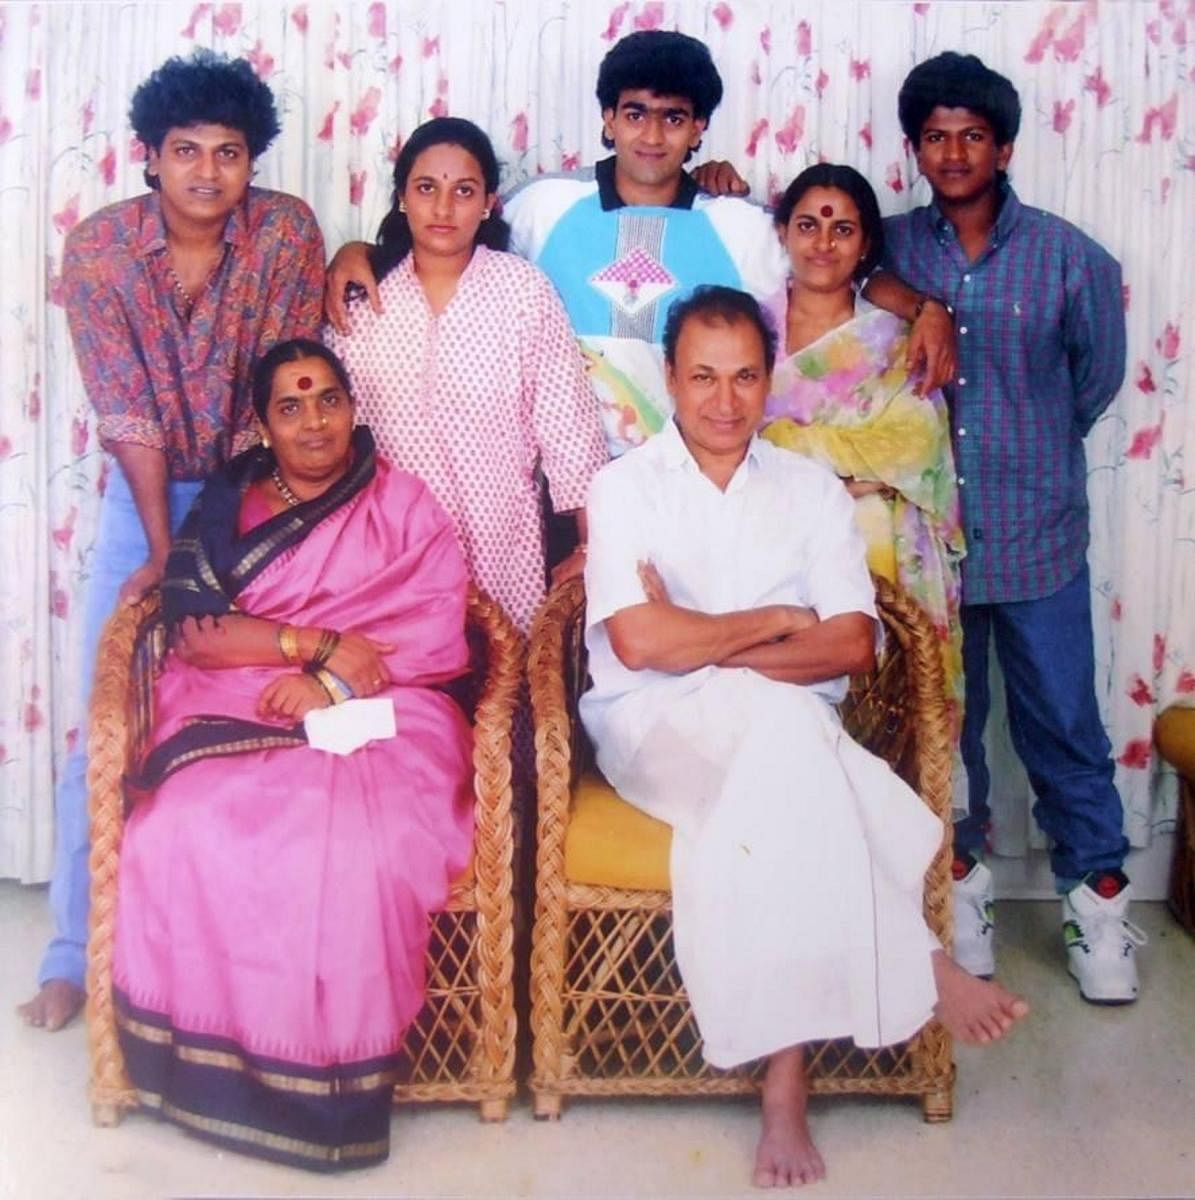 Shivarajkumar, Poornima, Raghavendra, Lakshmi, and Puneeth Rajkumar, with their parents Parvathamma and Dr Rajkumar.